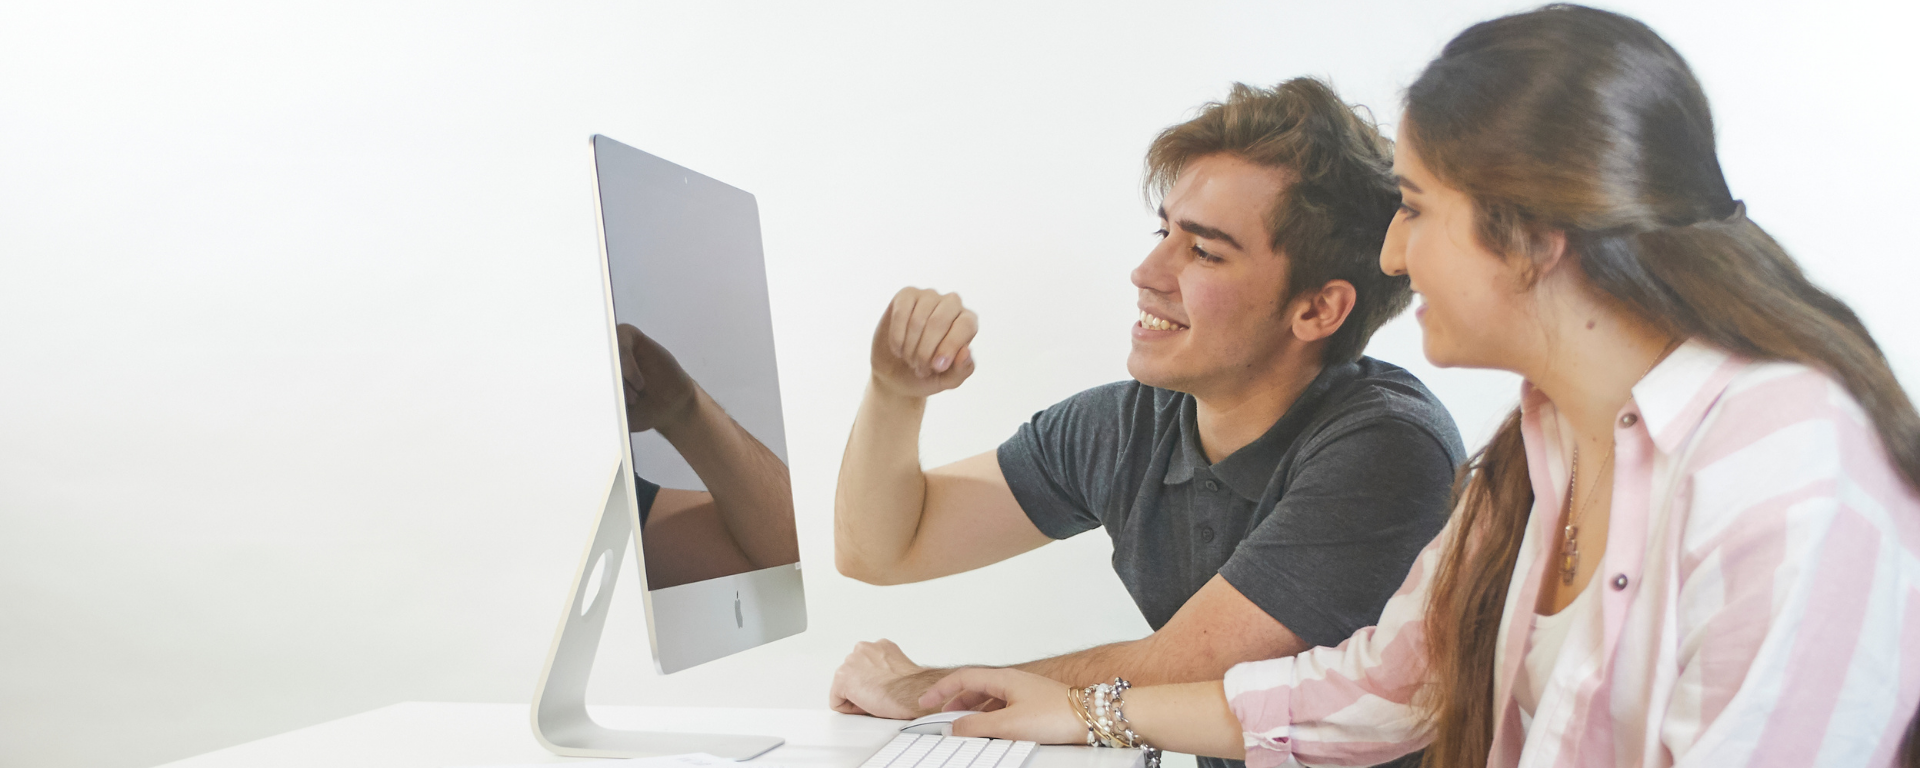 Un chico y una chica miran hacia la pantalla de una computadora.